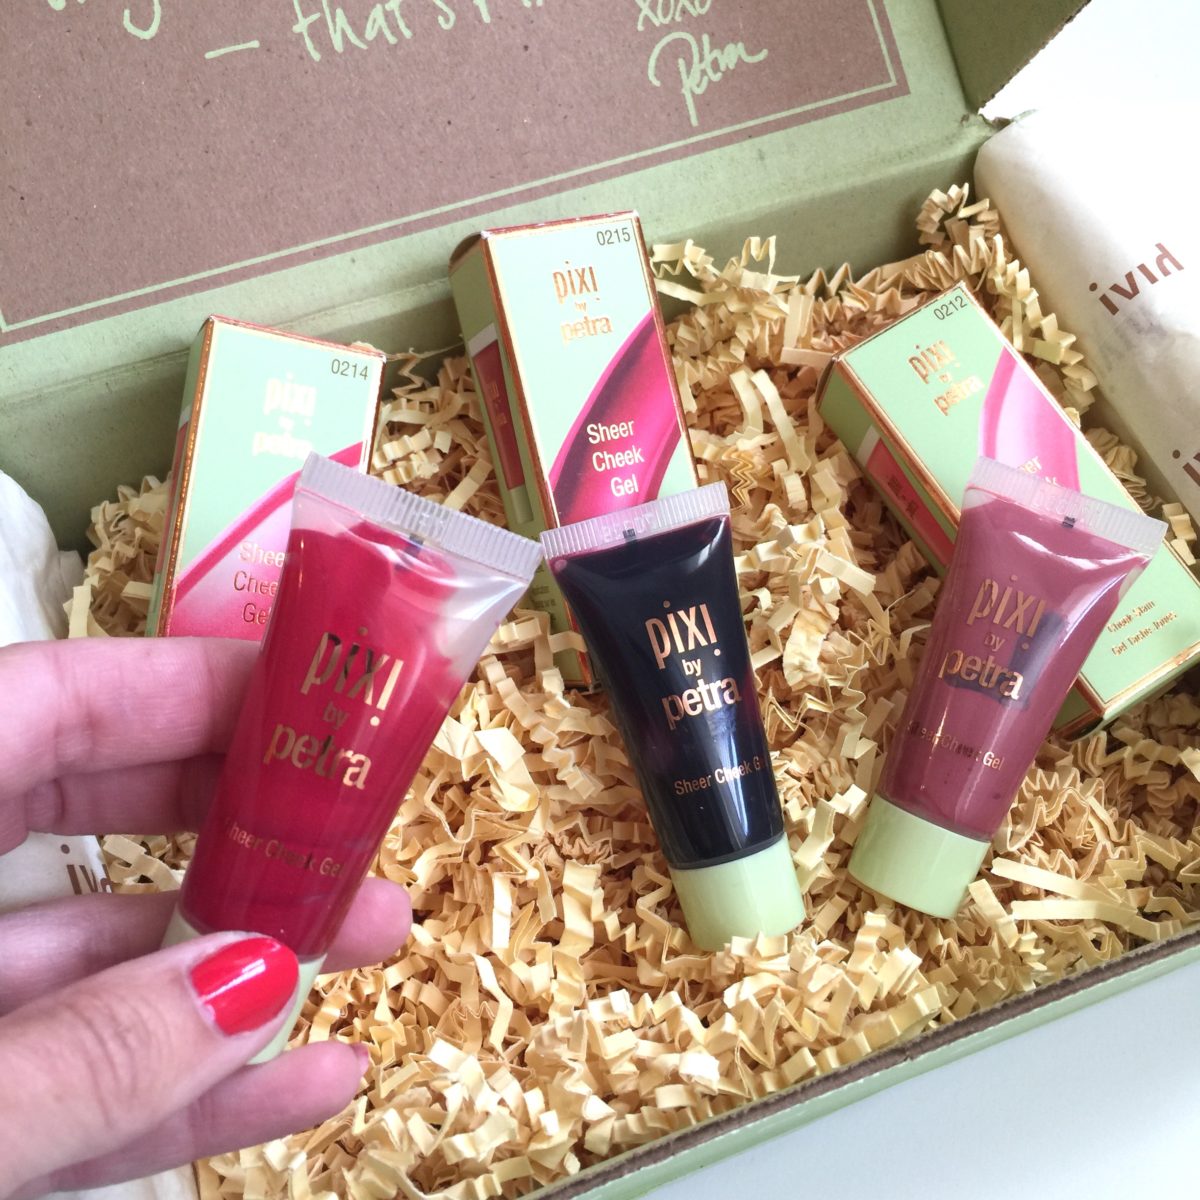 sheer cheek gels for summer beauty blogger jennysue makeup